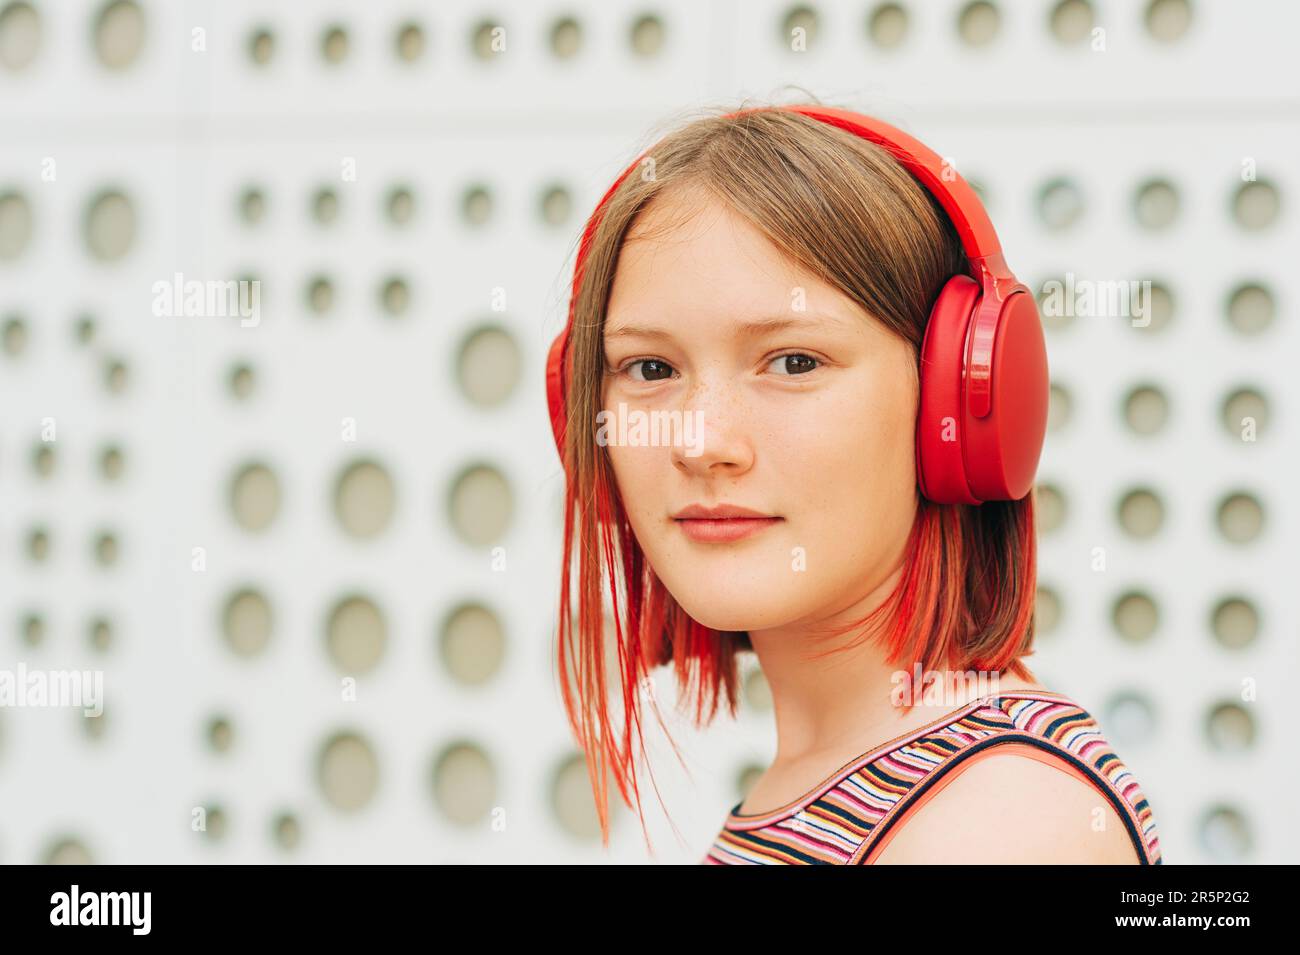 Außenporträt eines glücklichen jungen Mädchens mit stilvollem, rot gefärbtem kurzen Haar, das mit Kopfhörern Musik hört Stockfoto